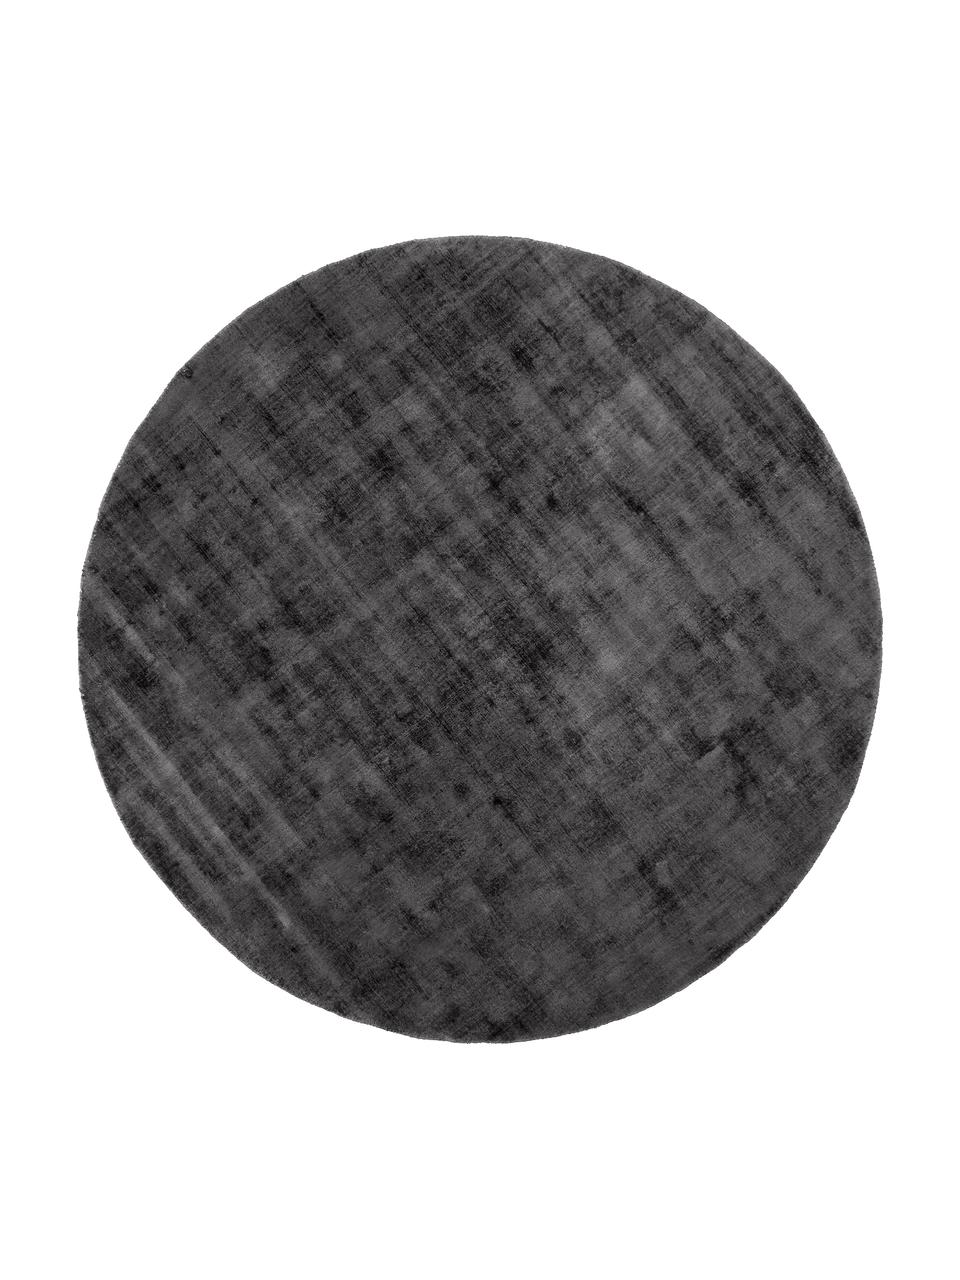 Rond viscose vloerkleed Jane in antraciet-zwart, handgeweven, Onderzijde: 100% katoen, Antraciet, Ø 150 cm (maat M)